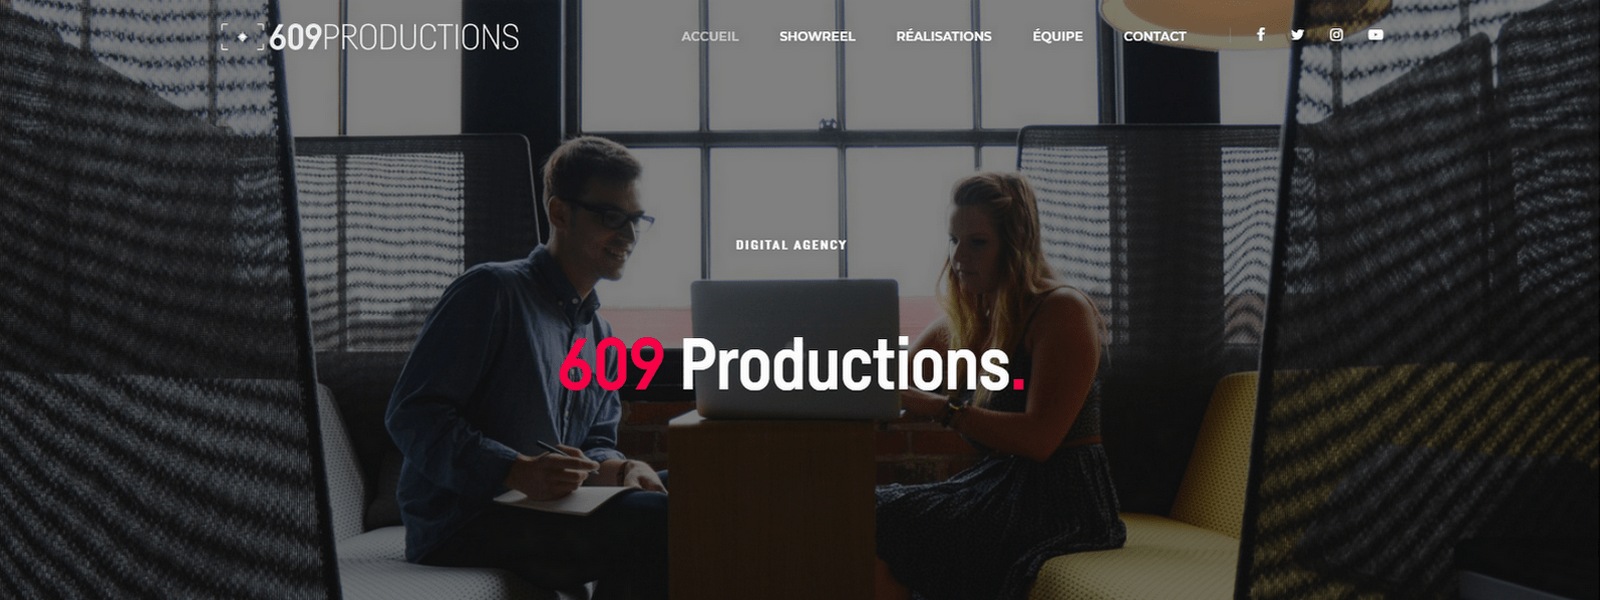 609 Productions - projet réalisé par Nity Pro (Florian LEROY)